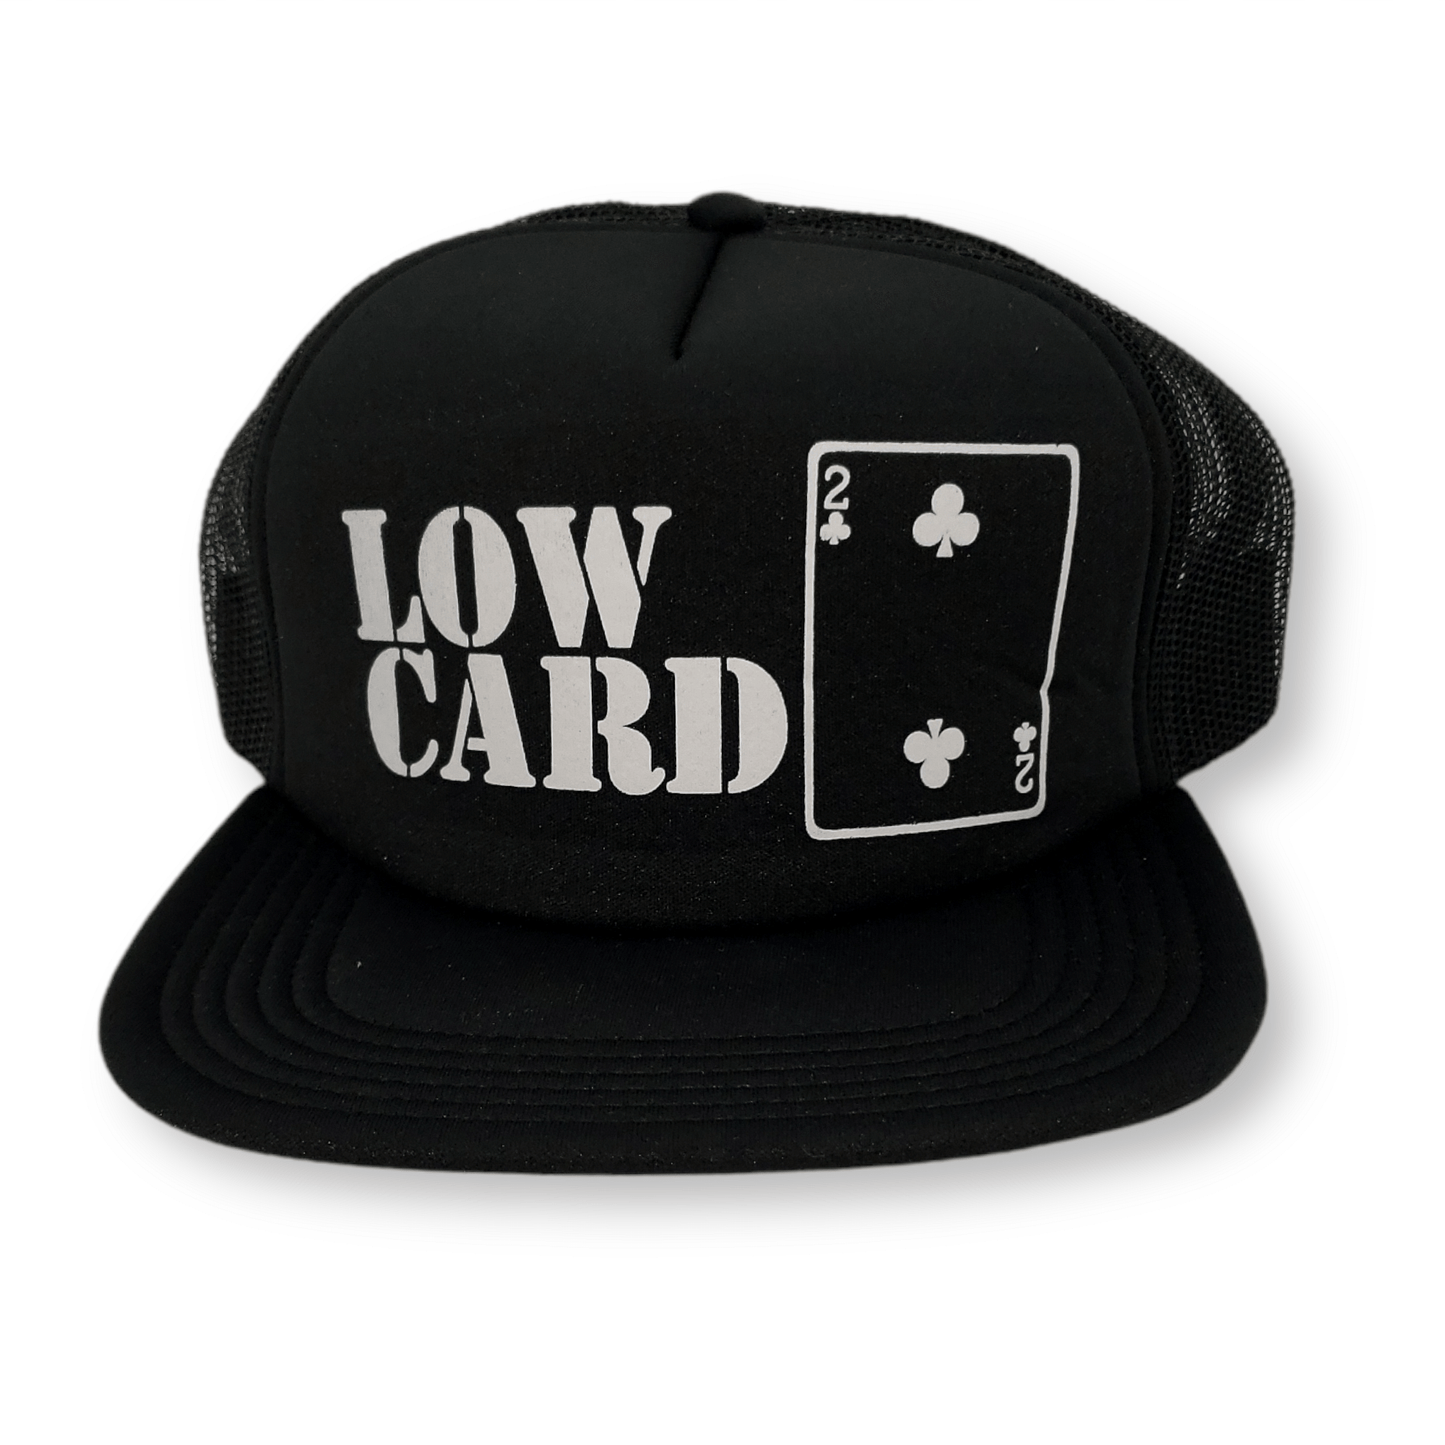 Lowcard | Original Logo Mesh Hat - Black/Black